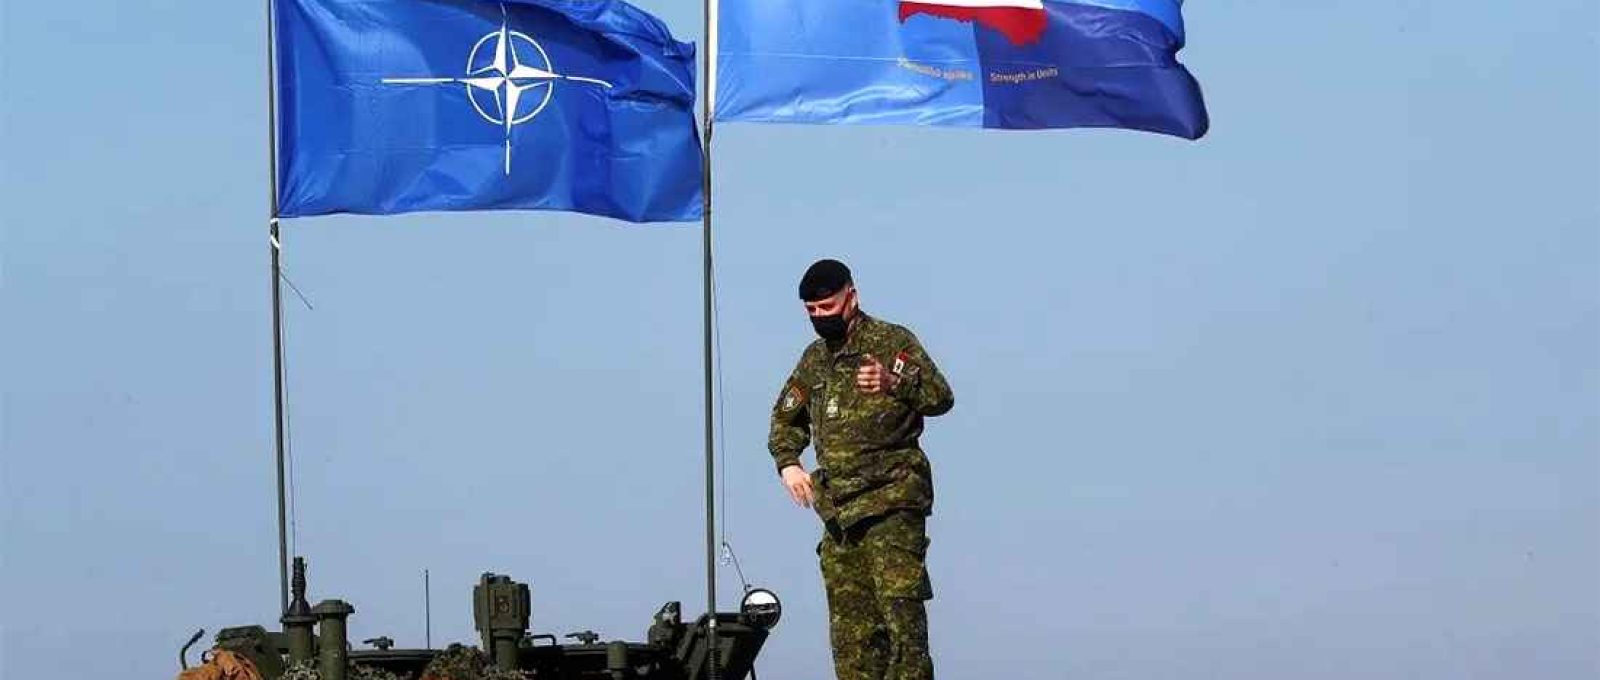 Bandeiras da OTAN e do grupo de batalha da Presença Avançada da OTAN na Letônia durante o exercício militar Crystal Arrow 2021 em Adazi, Letônia, 26 de março de 2021 (Reuters).